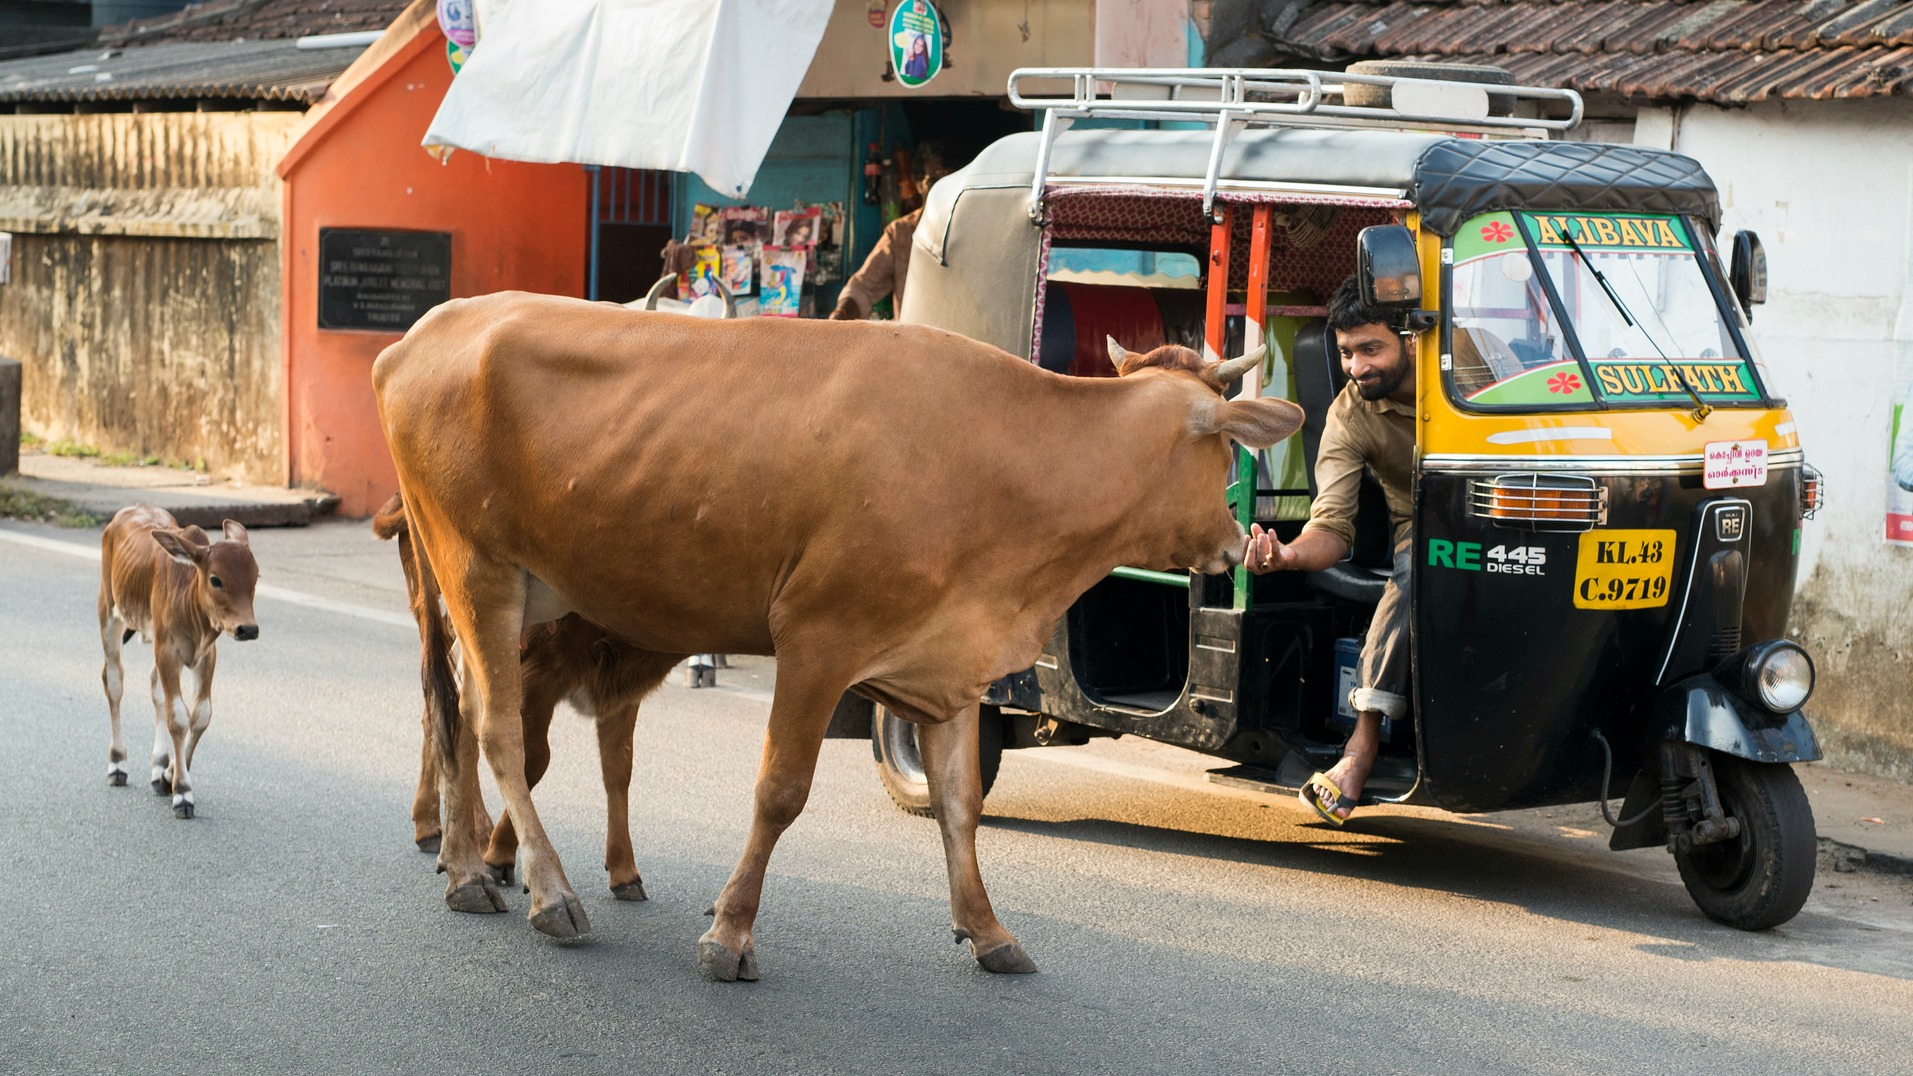 Les vaches sont des animaux sacrés dans l'hindouisme (Photo:www.david baxendale.com/Flickr/CC BY-ND 2.0)